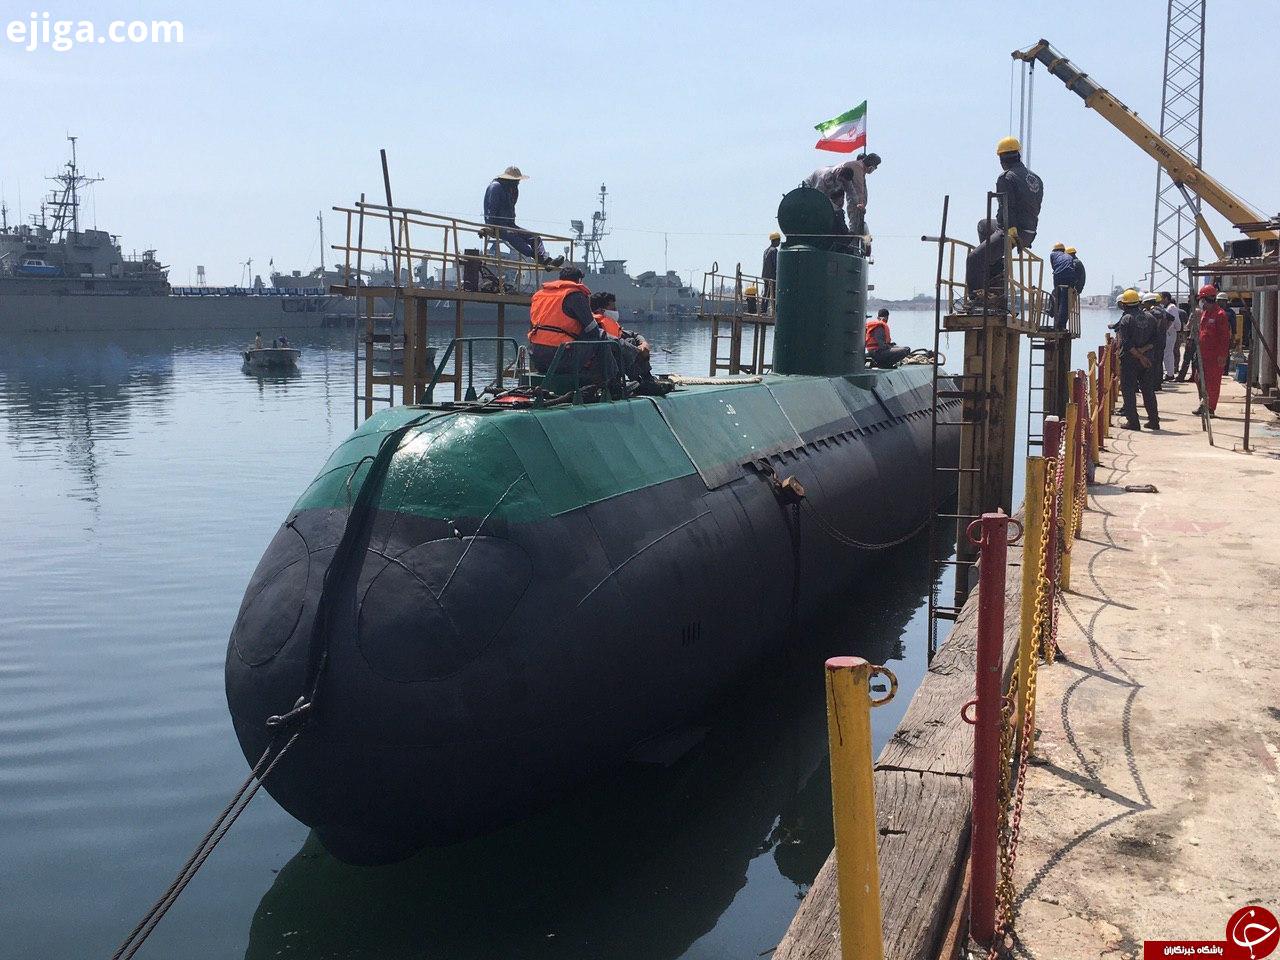 زیردریایی بومی غدیر به آب انداخته شد + تصاویر